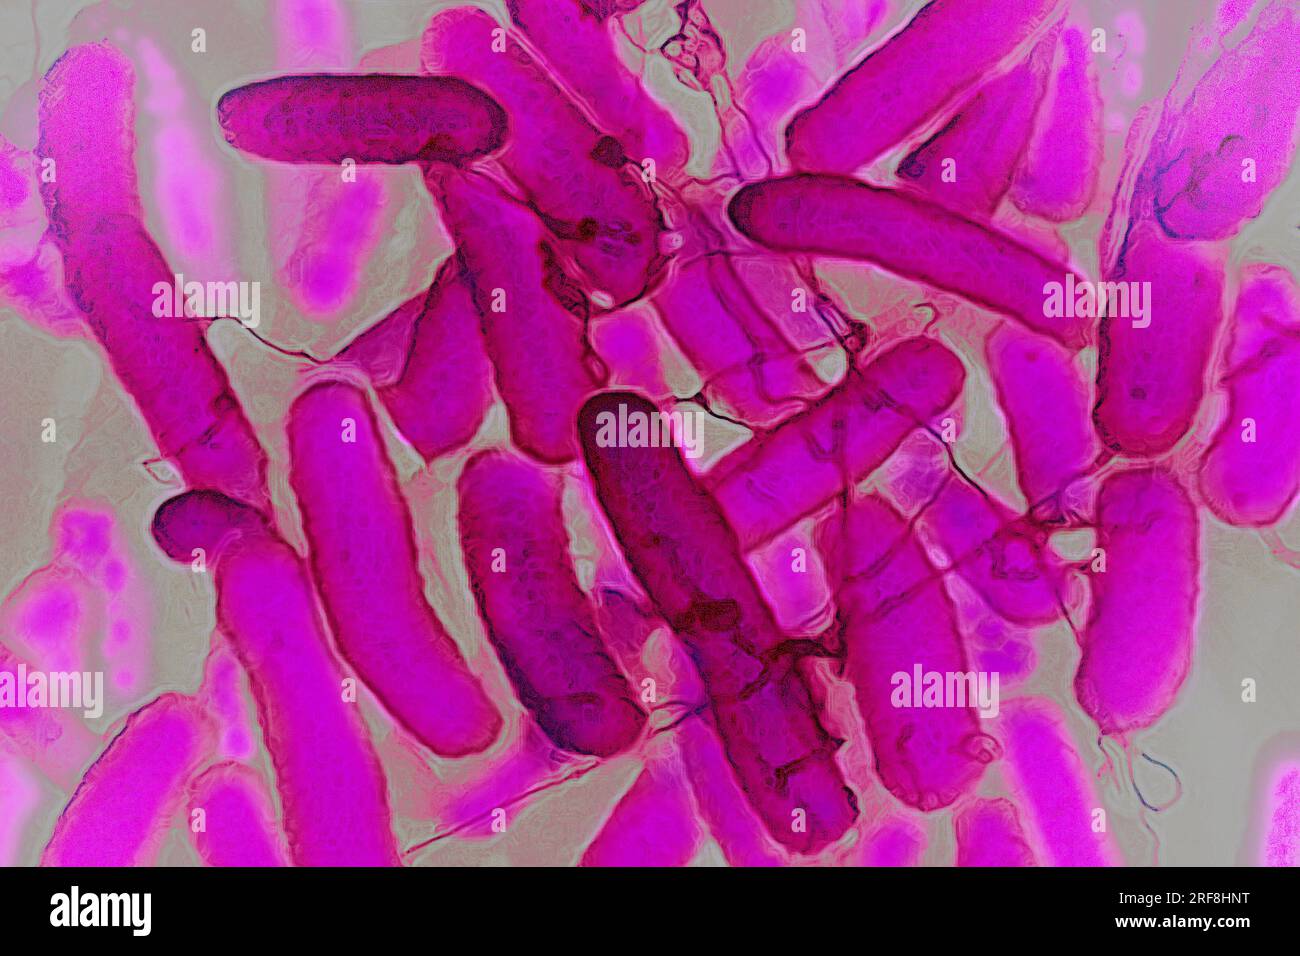 Escherichia coli (batteri intestinali che risiedono nel tratto digerente dell'uomo e degli animali a sangue caldo, è la causa dell'intossicazione alimentare. Foto Stock